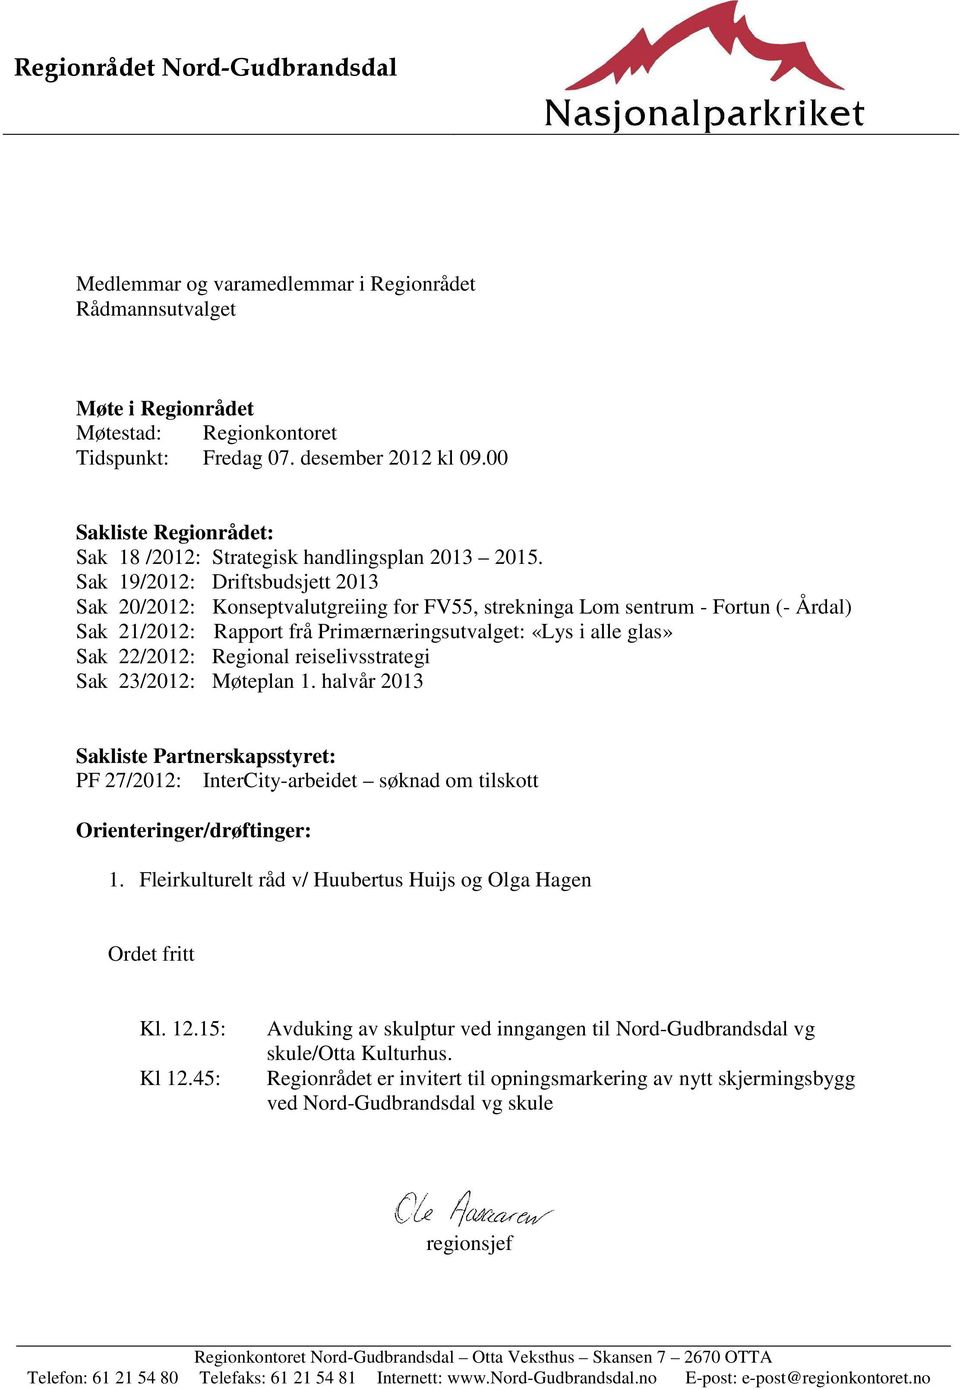 Sak 19/2012: Driftsbudsjett 2013 Sak 20/2012: Konseptvalutgreiing for FV55, strekninga Lom sentrum - Fortun (- Årdal) Sak 21/2012: Rapport frå Primærnæringsutvalget: «Lys i alle glas» Sak 22/2012: